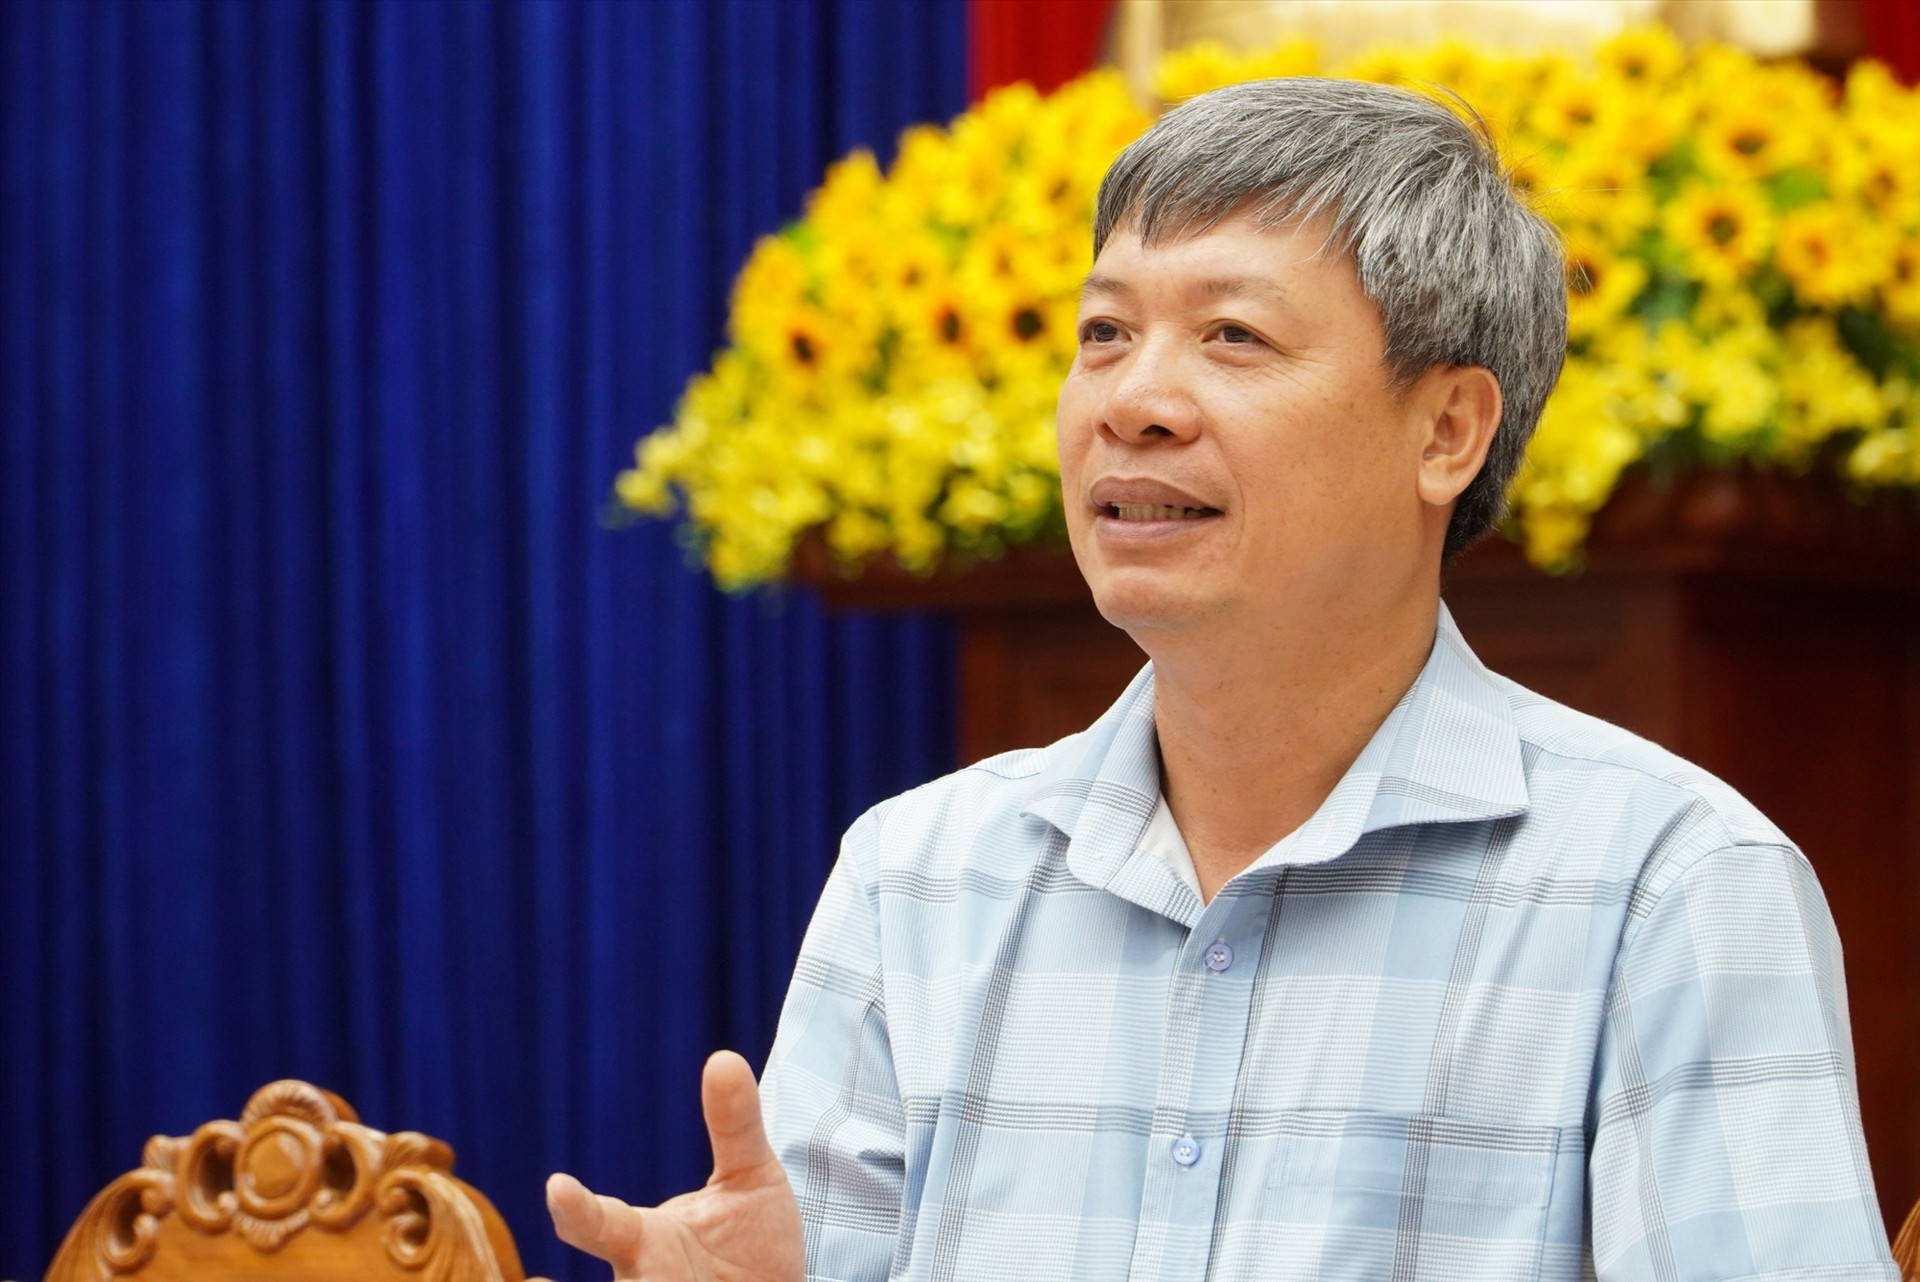 Phó Chủ tịch UBND tỉnh Hồ Quang Bửu trả lời câu hỏi của công nhân lao động.